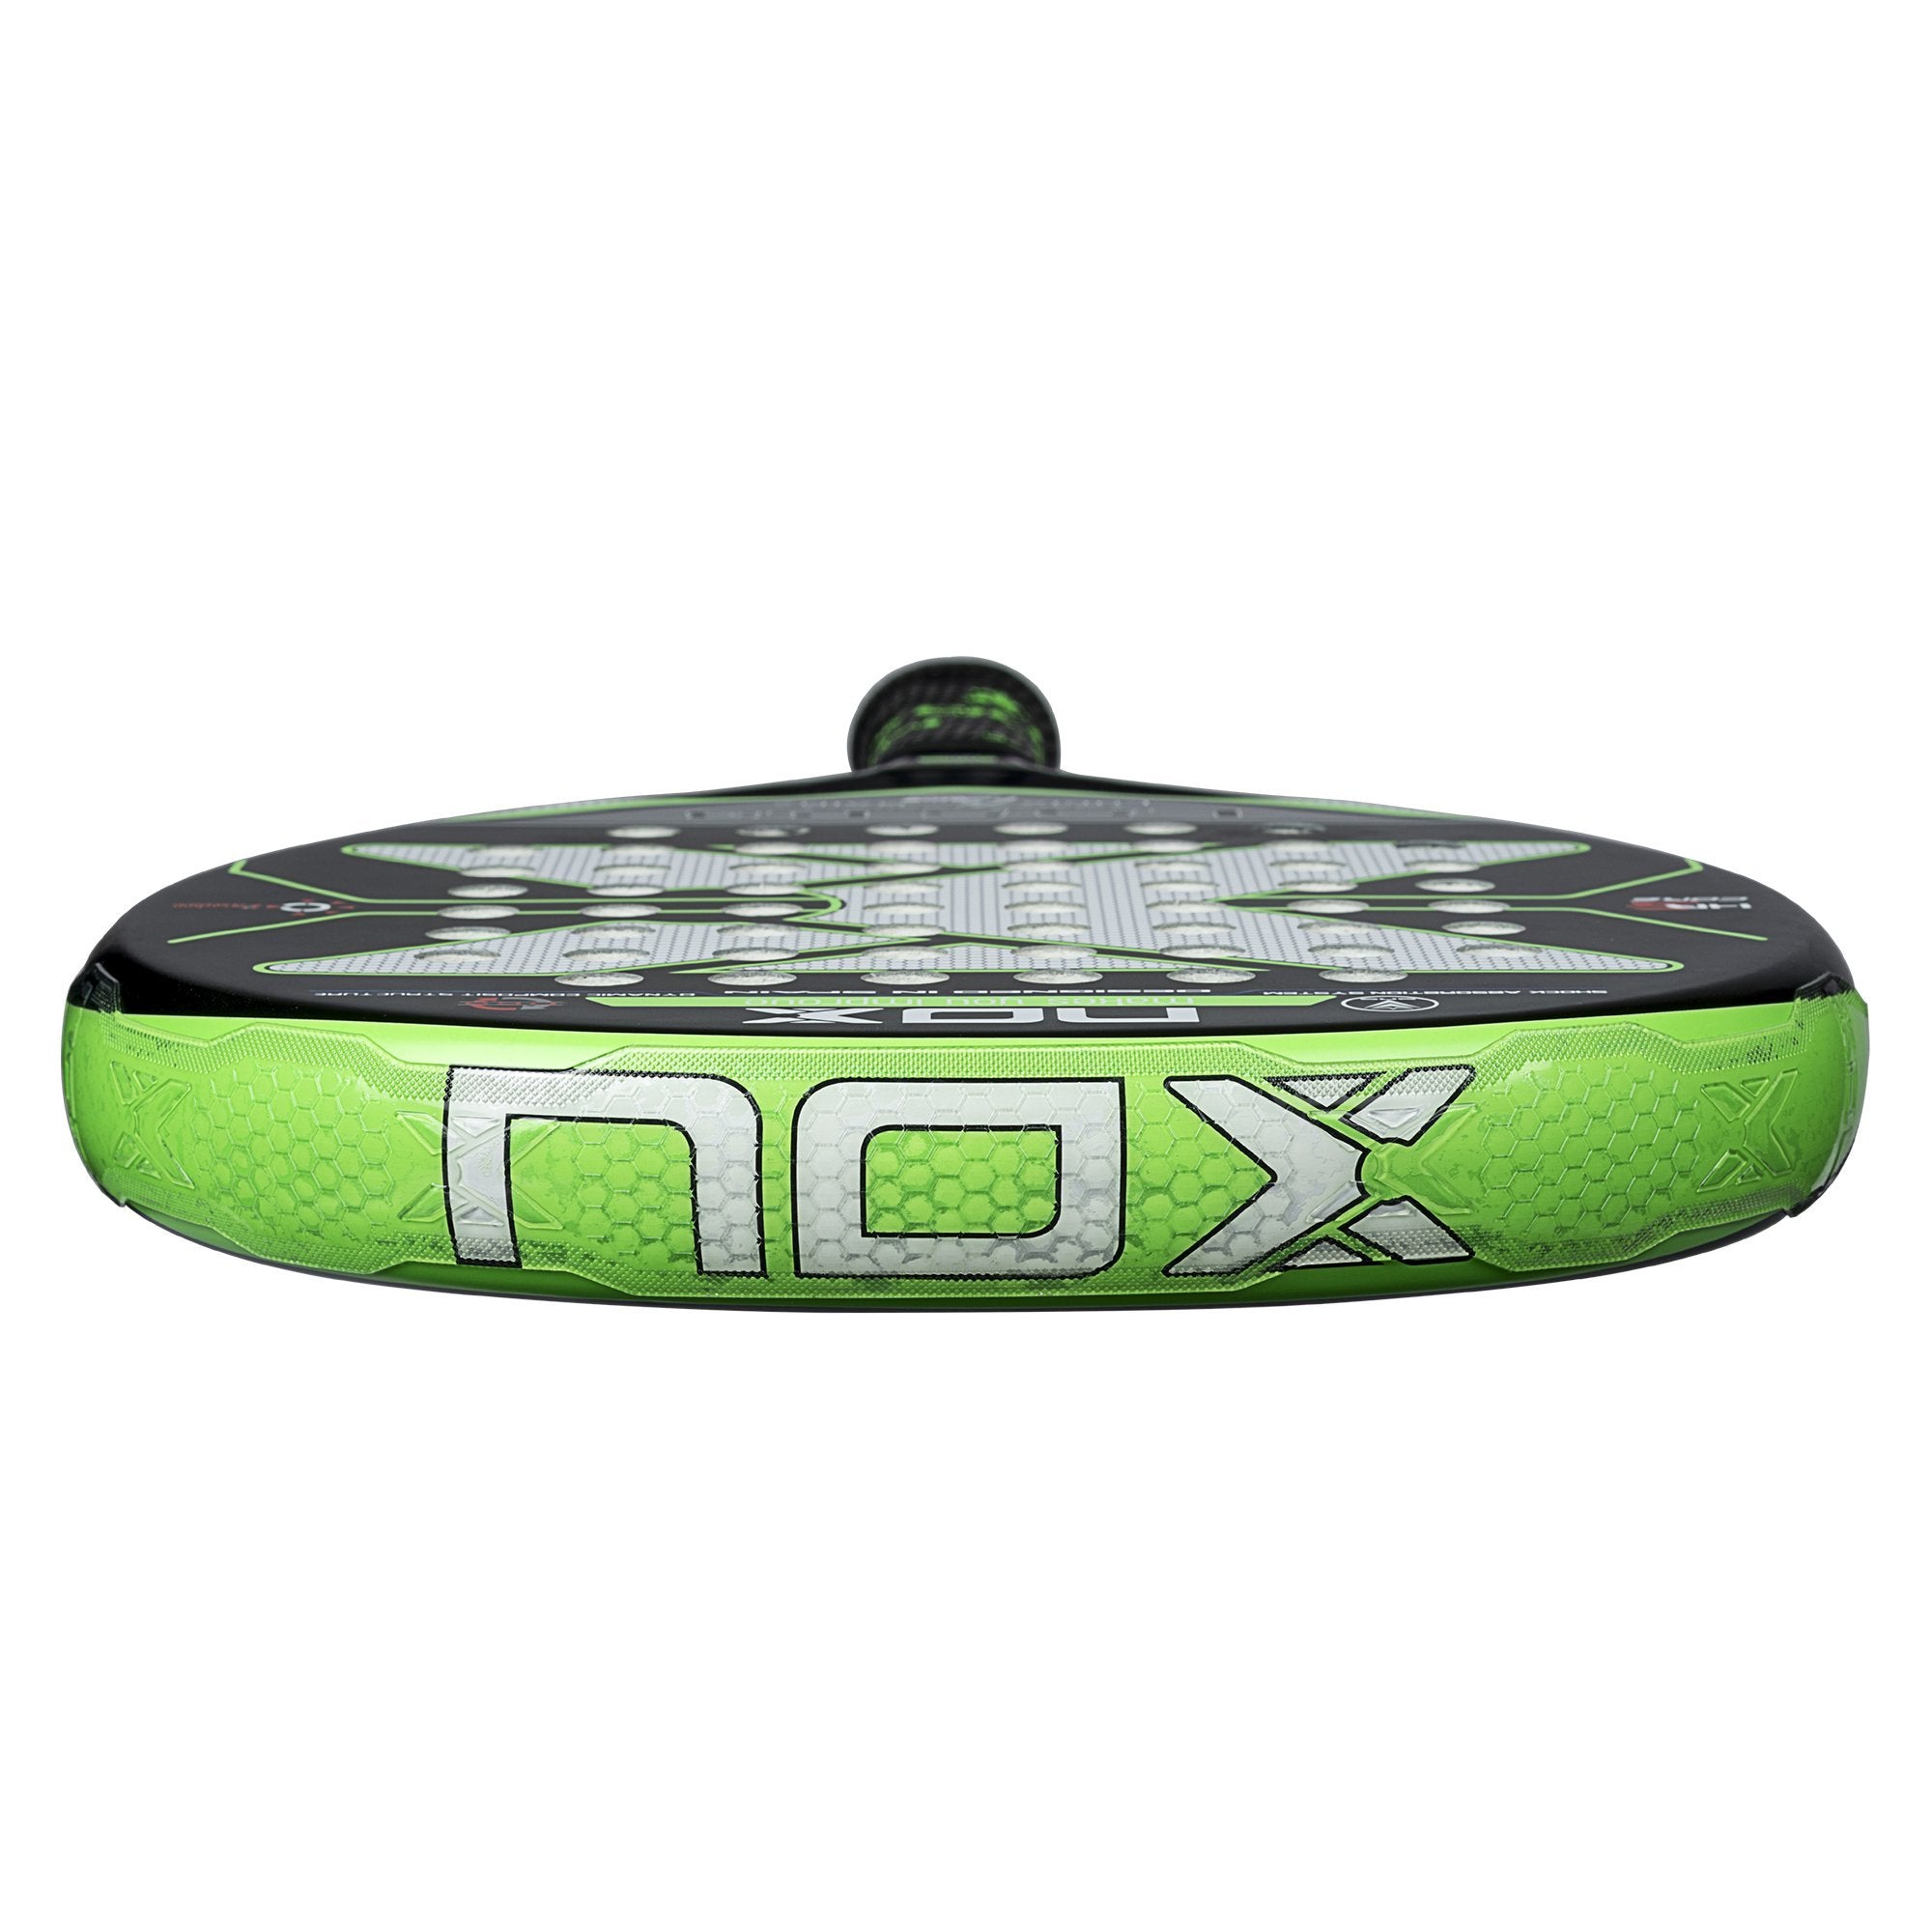 Nox Custom Grip-Tiendapadel5-Tú tienda de pádel online